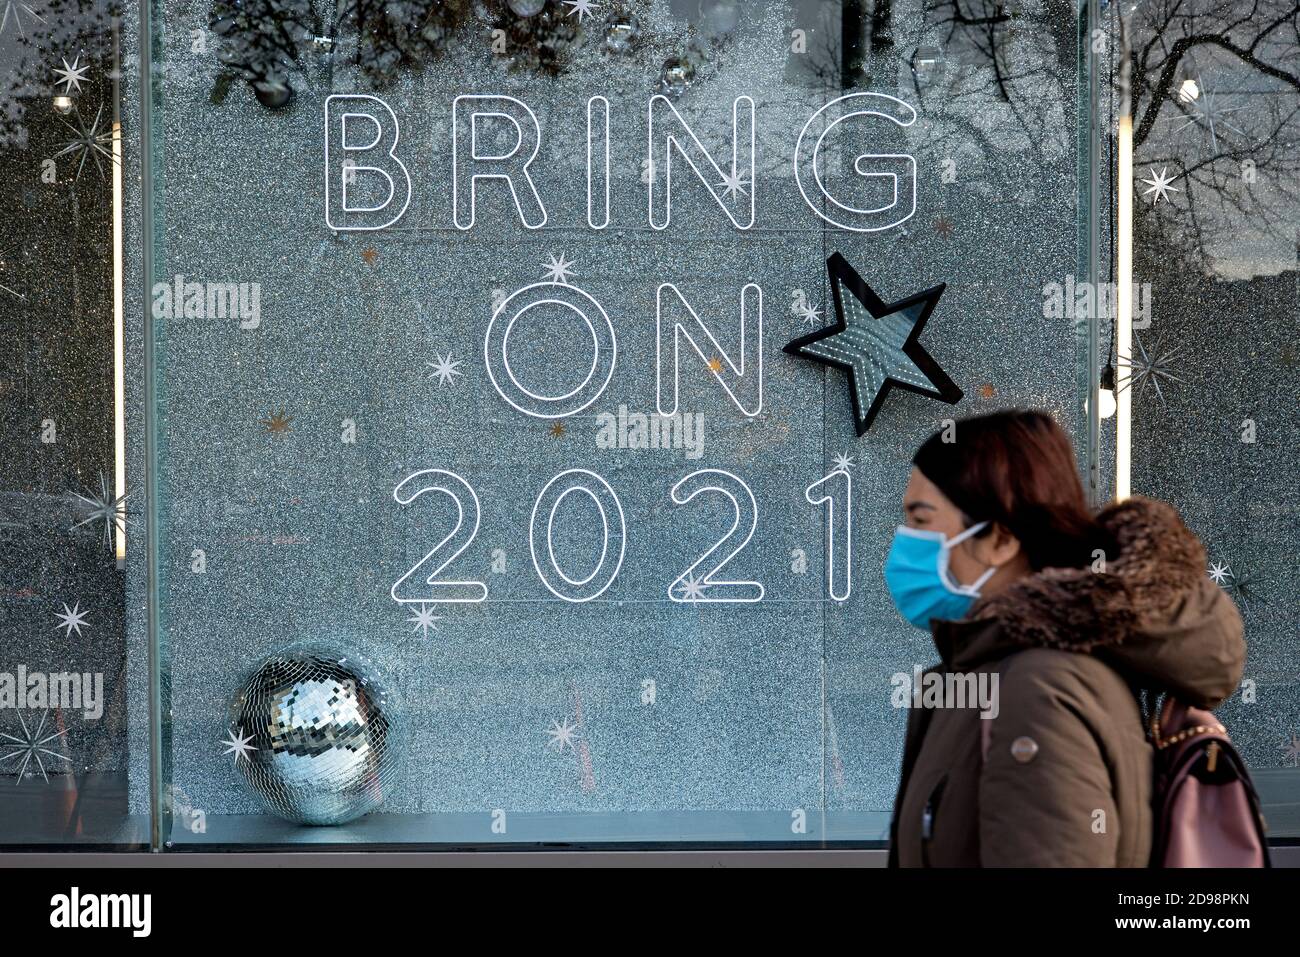 St Andrew Square, Edimburgo, 3 novembre 2020. Donna che indossa una maschera facciale cammina oltre un segno nella finestra di Harvey Nichols che recita: 'Bring on 2021'. Foto Stock